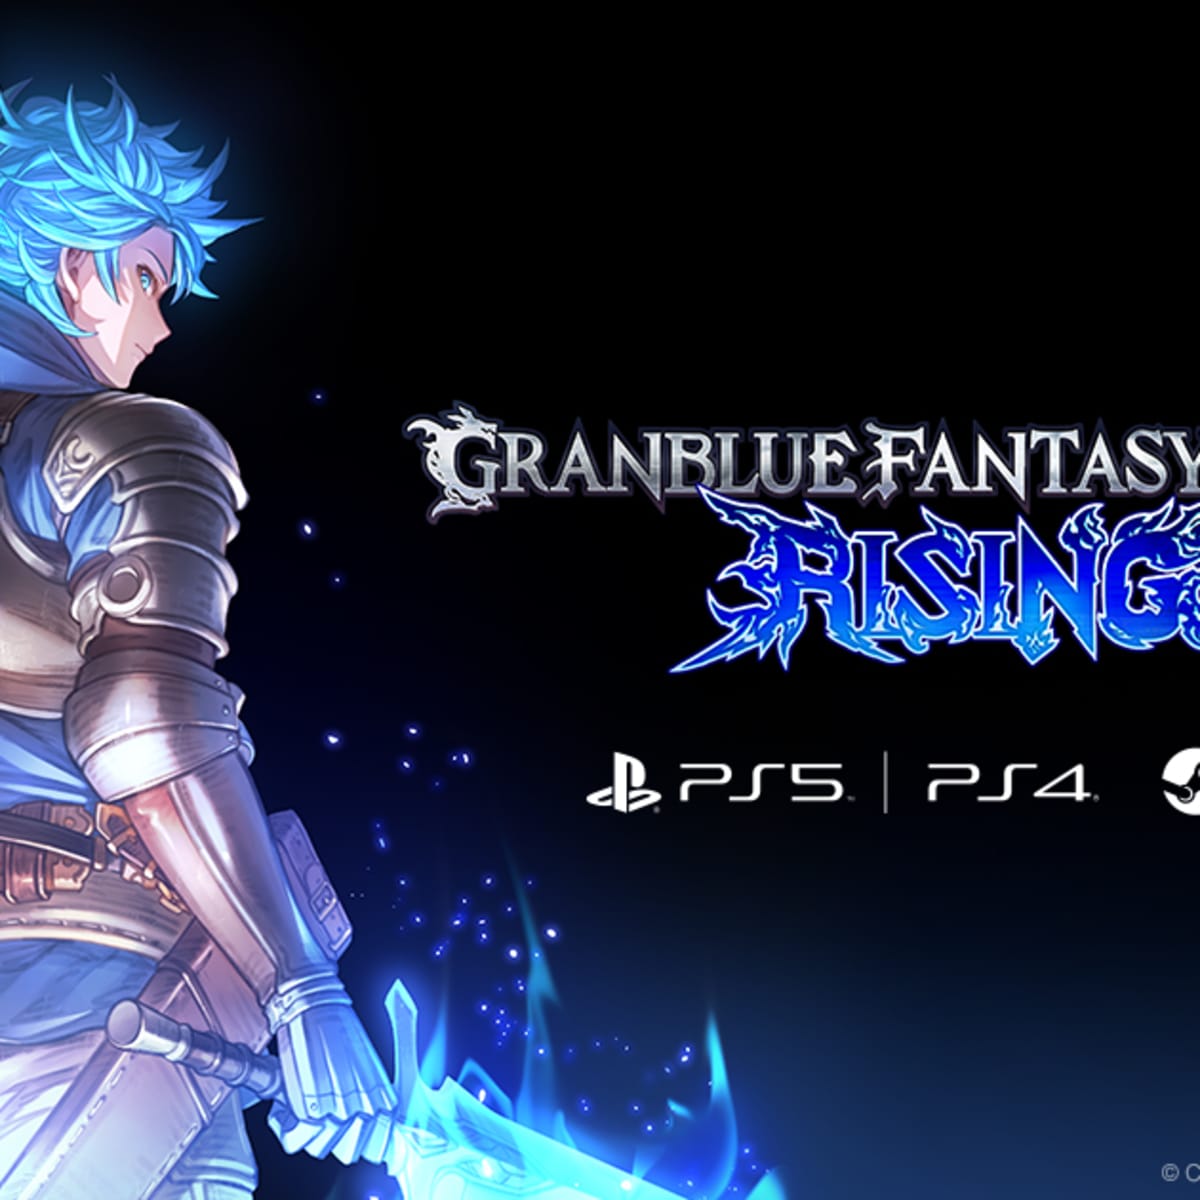 Granblue Fantasy Versus: Rising online beta coming in July